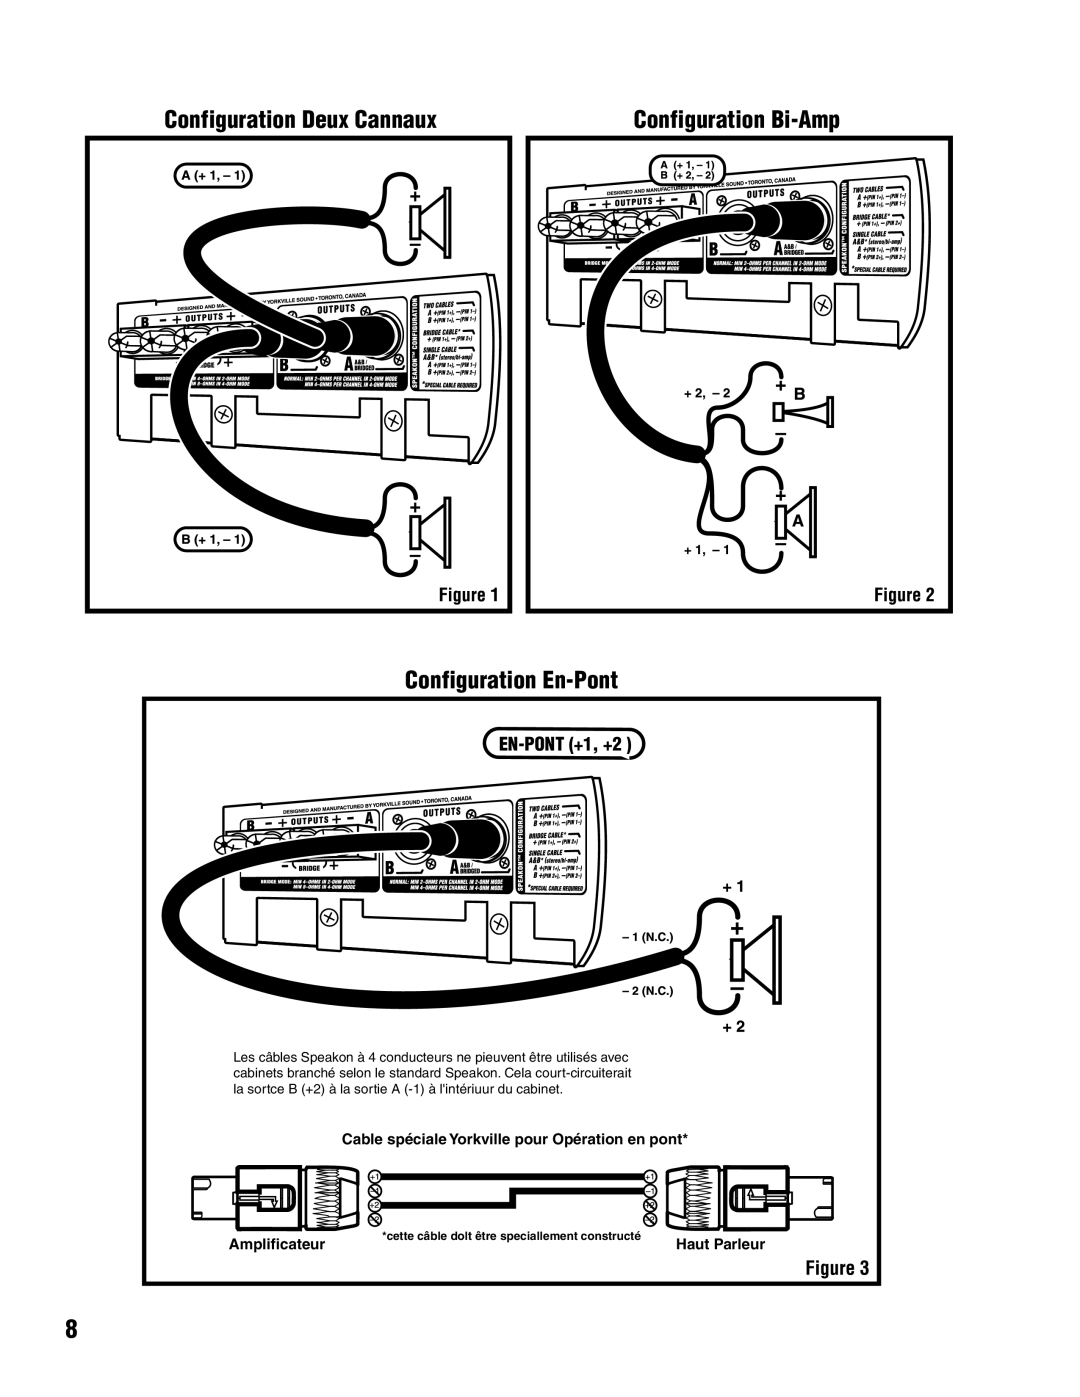 Yorkville Sound AP1020 manual Configuration Deux Cannaux, Configuration Bi-Amp, Configuration En-Pont, Amplificateur 